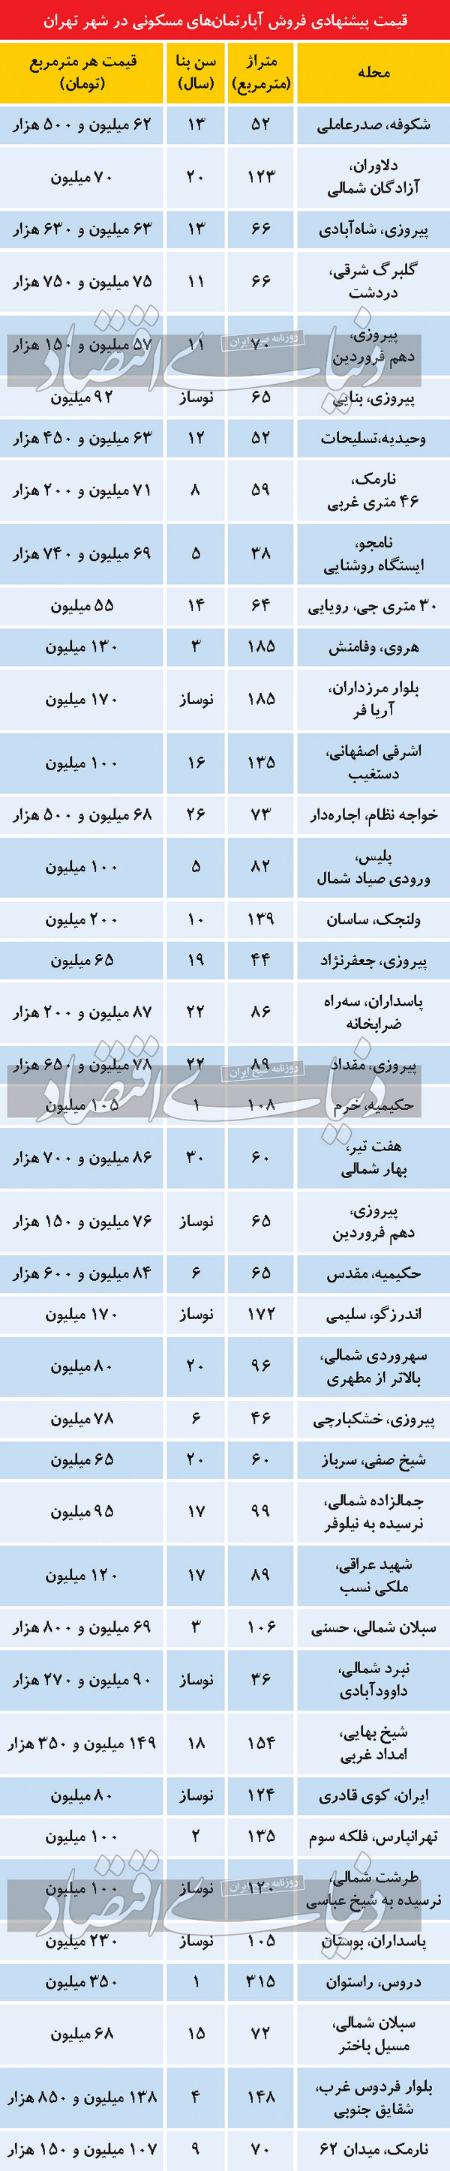 قیمت آپارتمان در تهران اخبار اقتصادی اخبار اقتصادی